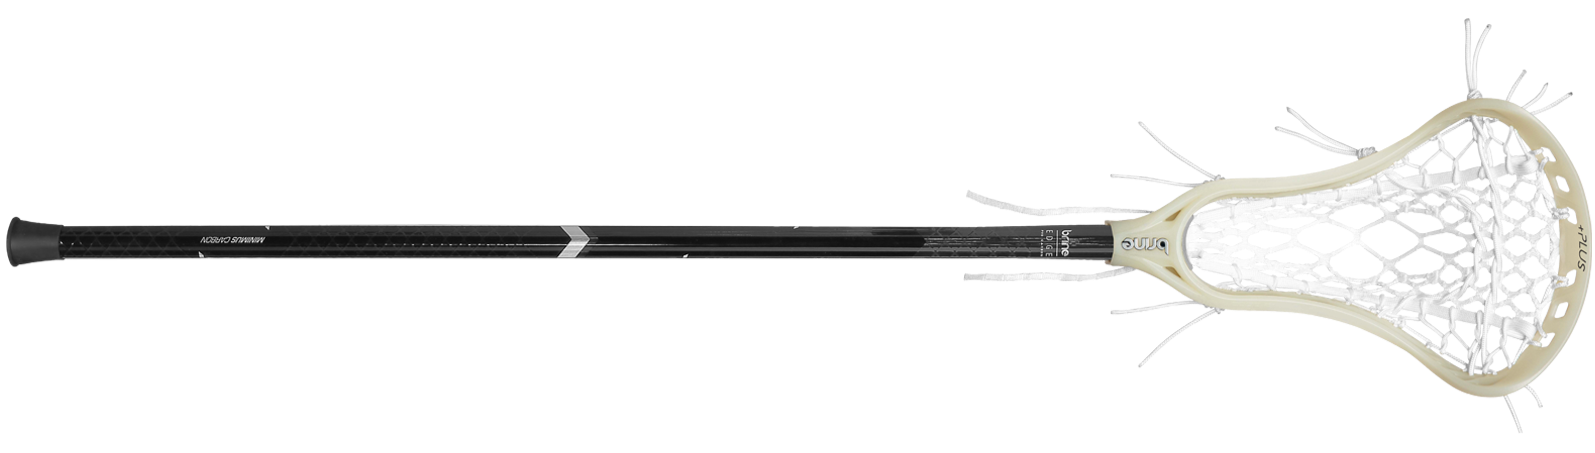 Brine Edge Pro Plus Carbon Lacrosse Complete Stick